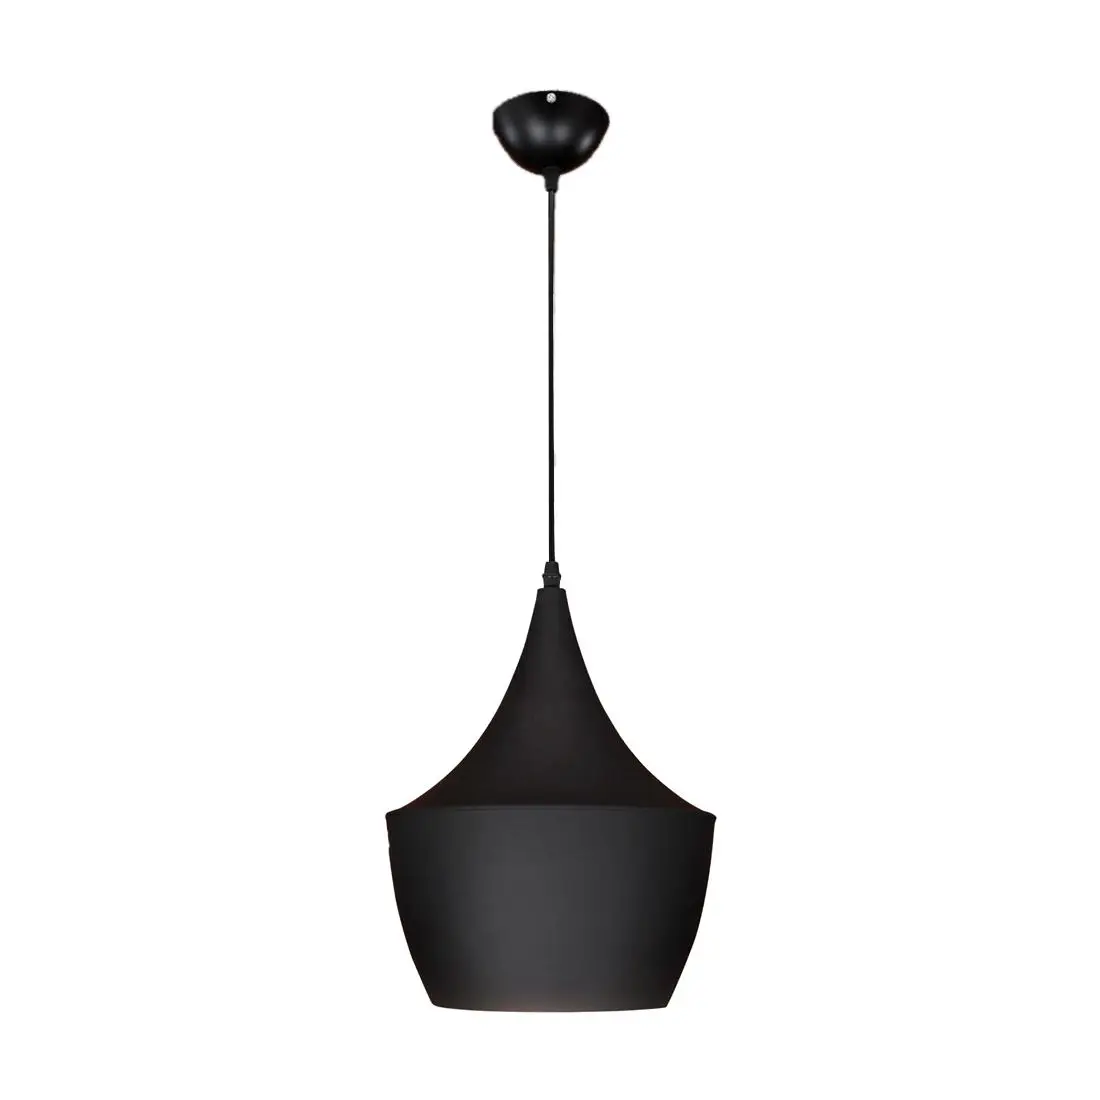 

Black Modern Ceiling Lights Lamp chandeliers 60W Fixture Ligting